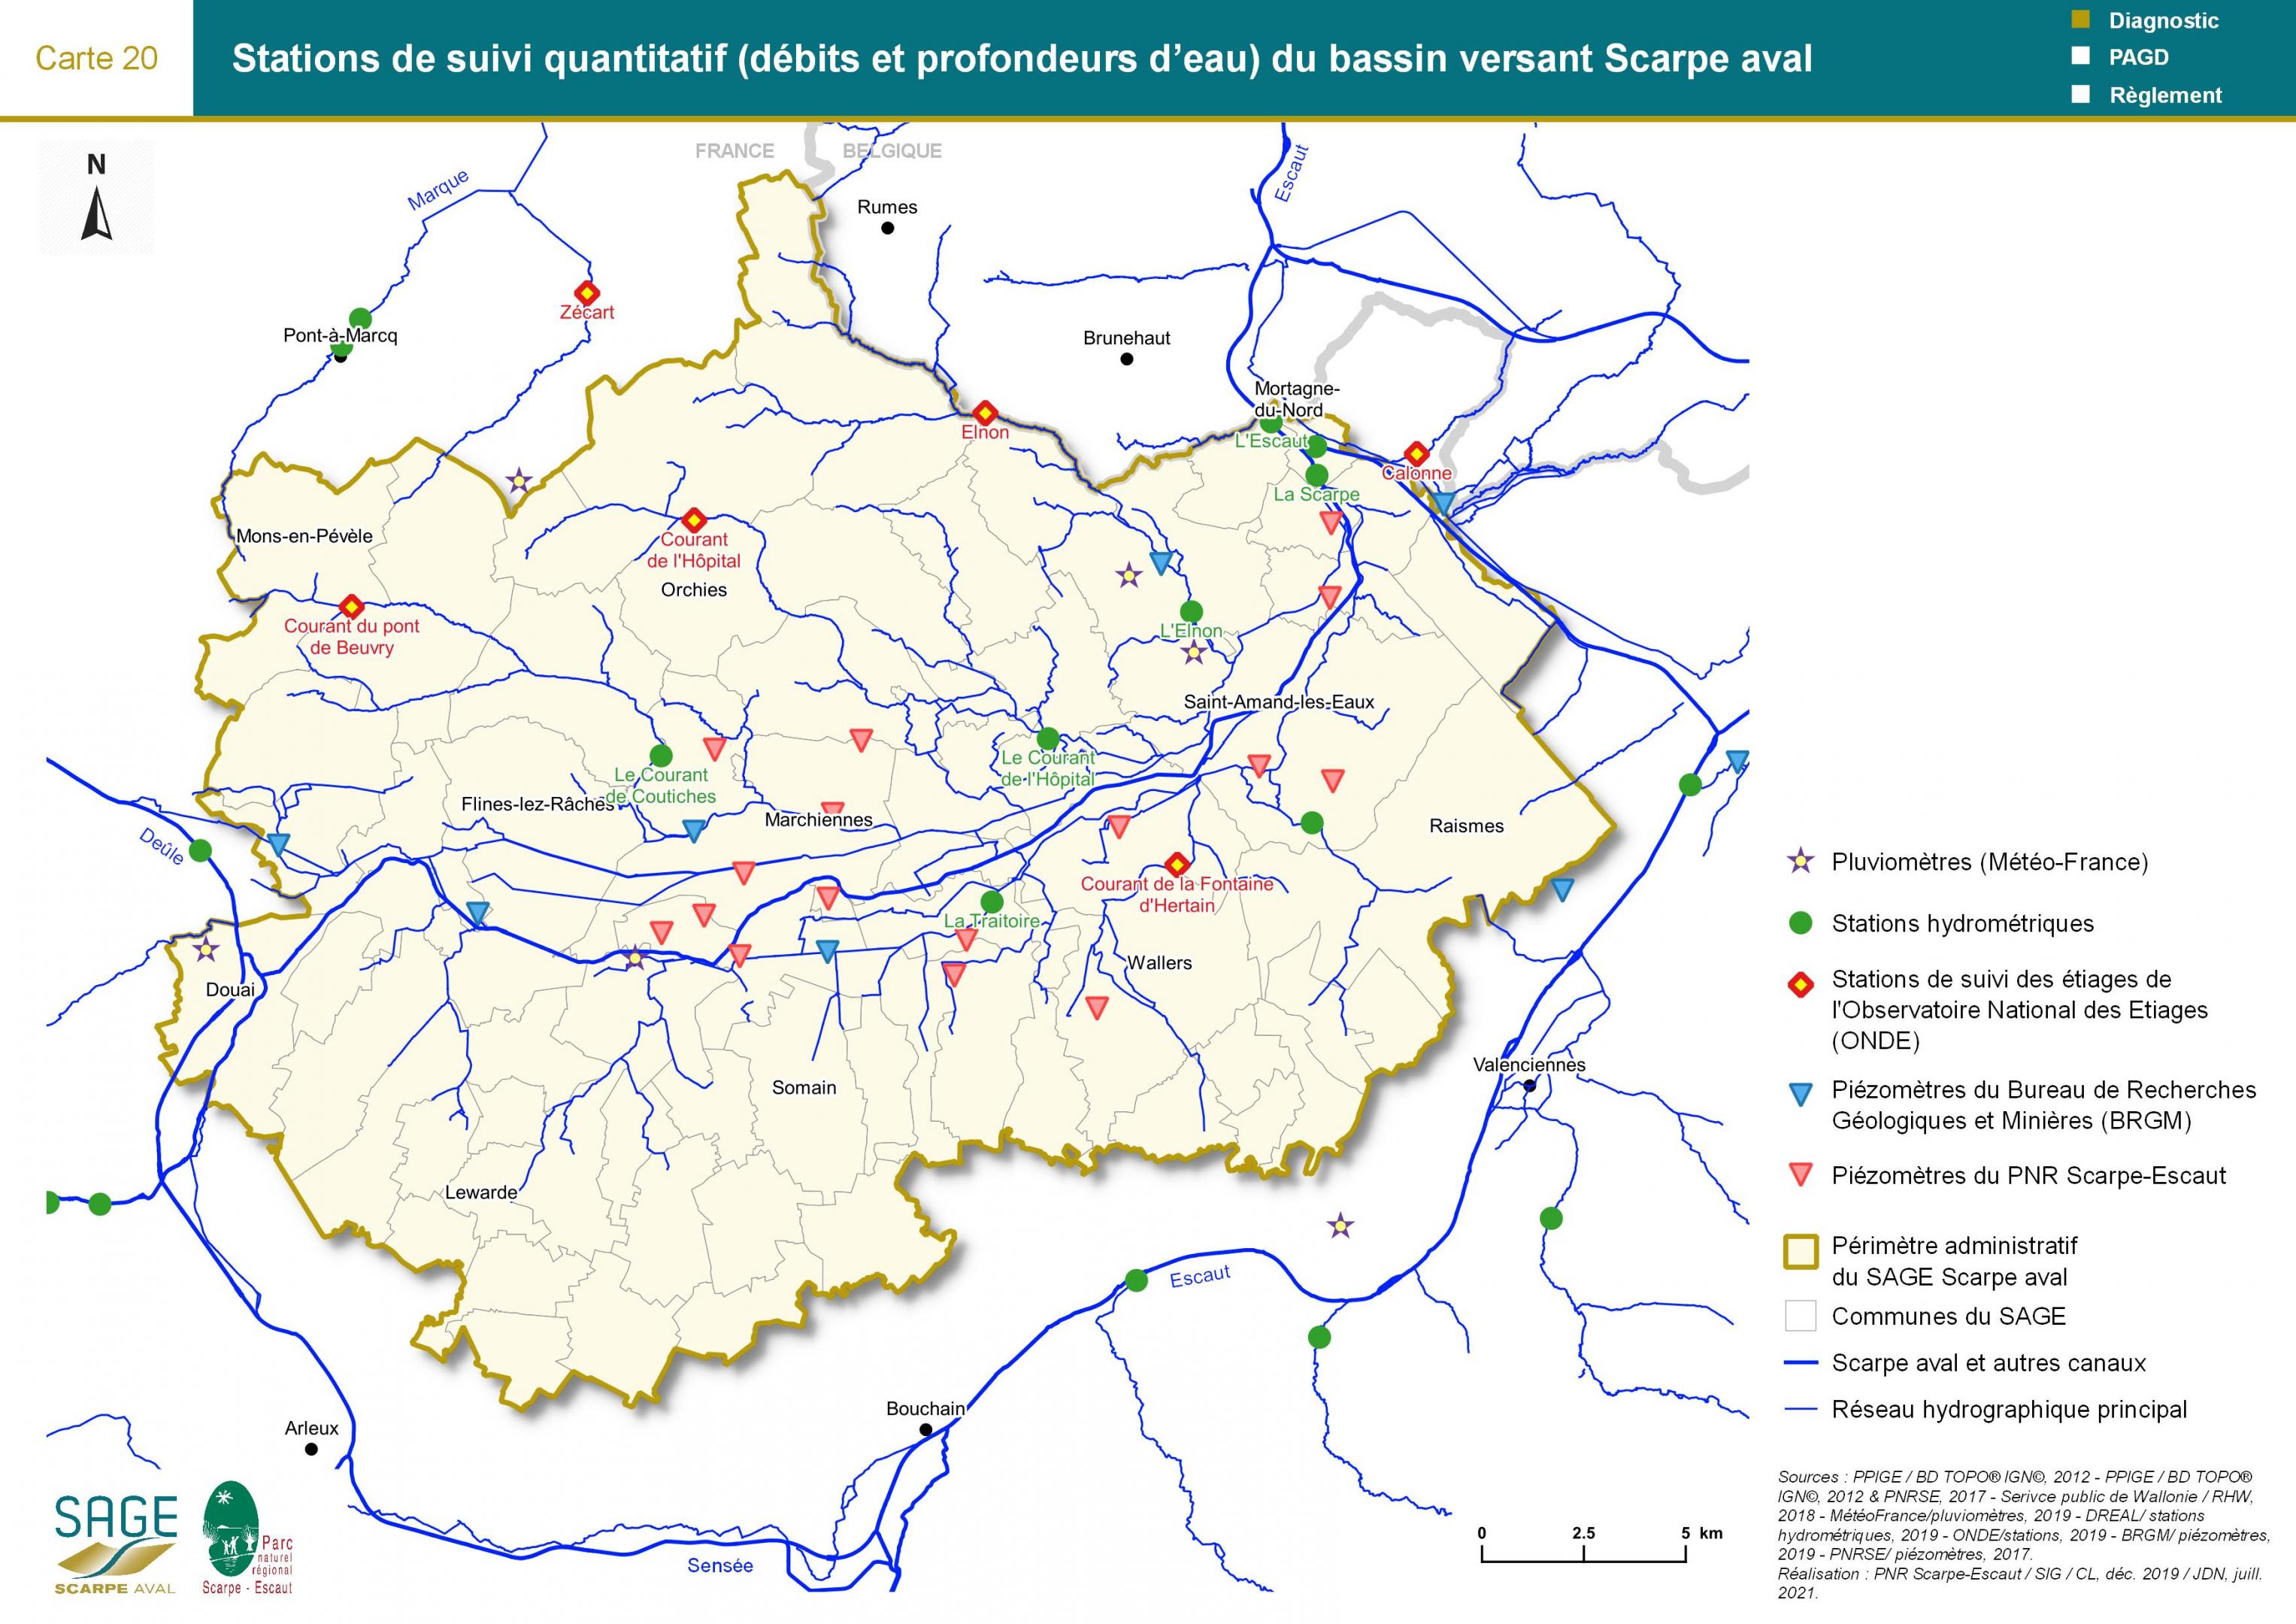 Etat des lieux - Carte 20 : Stations de suivi quantitatif (débits et profondeurs d’eau) du bassin versant Scarpe aval